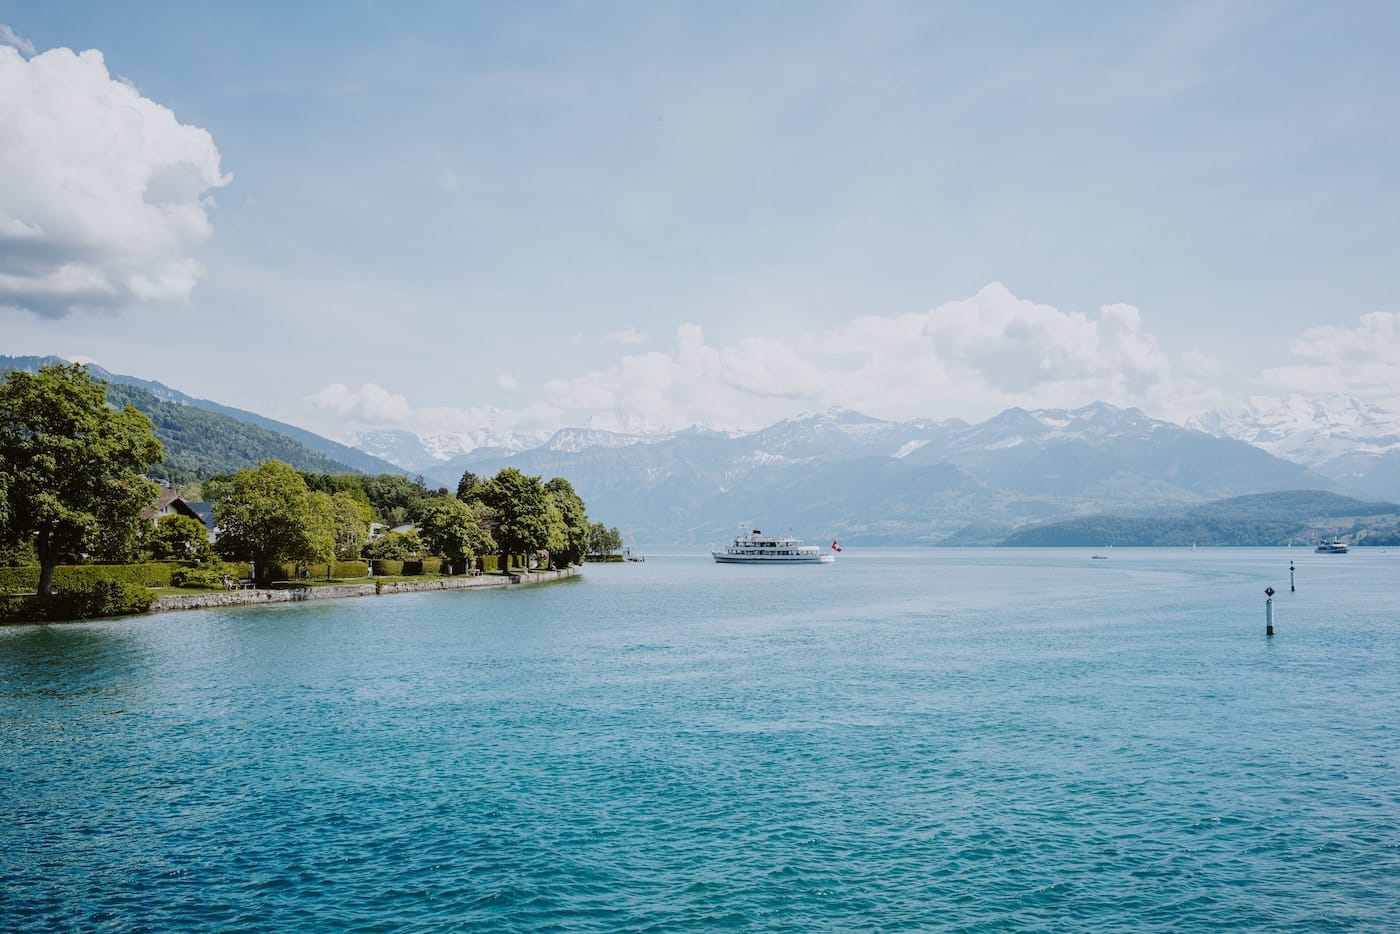 Gratis doen in Zwitserland: ontdek de meren zoals de Thunersee